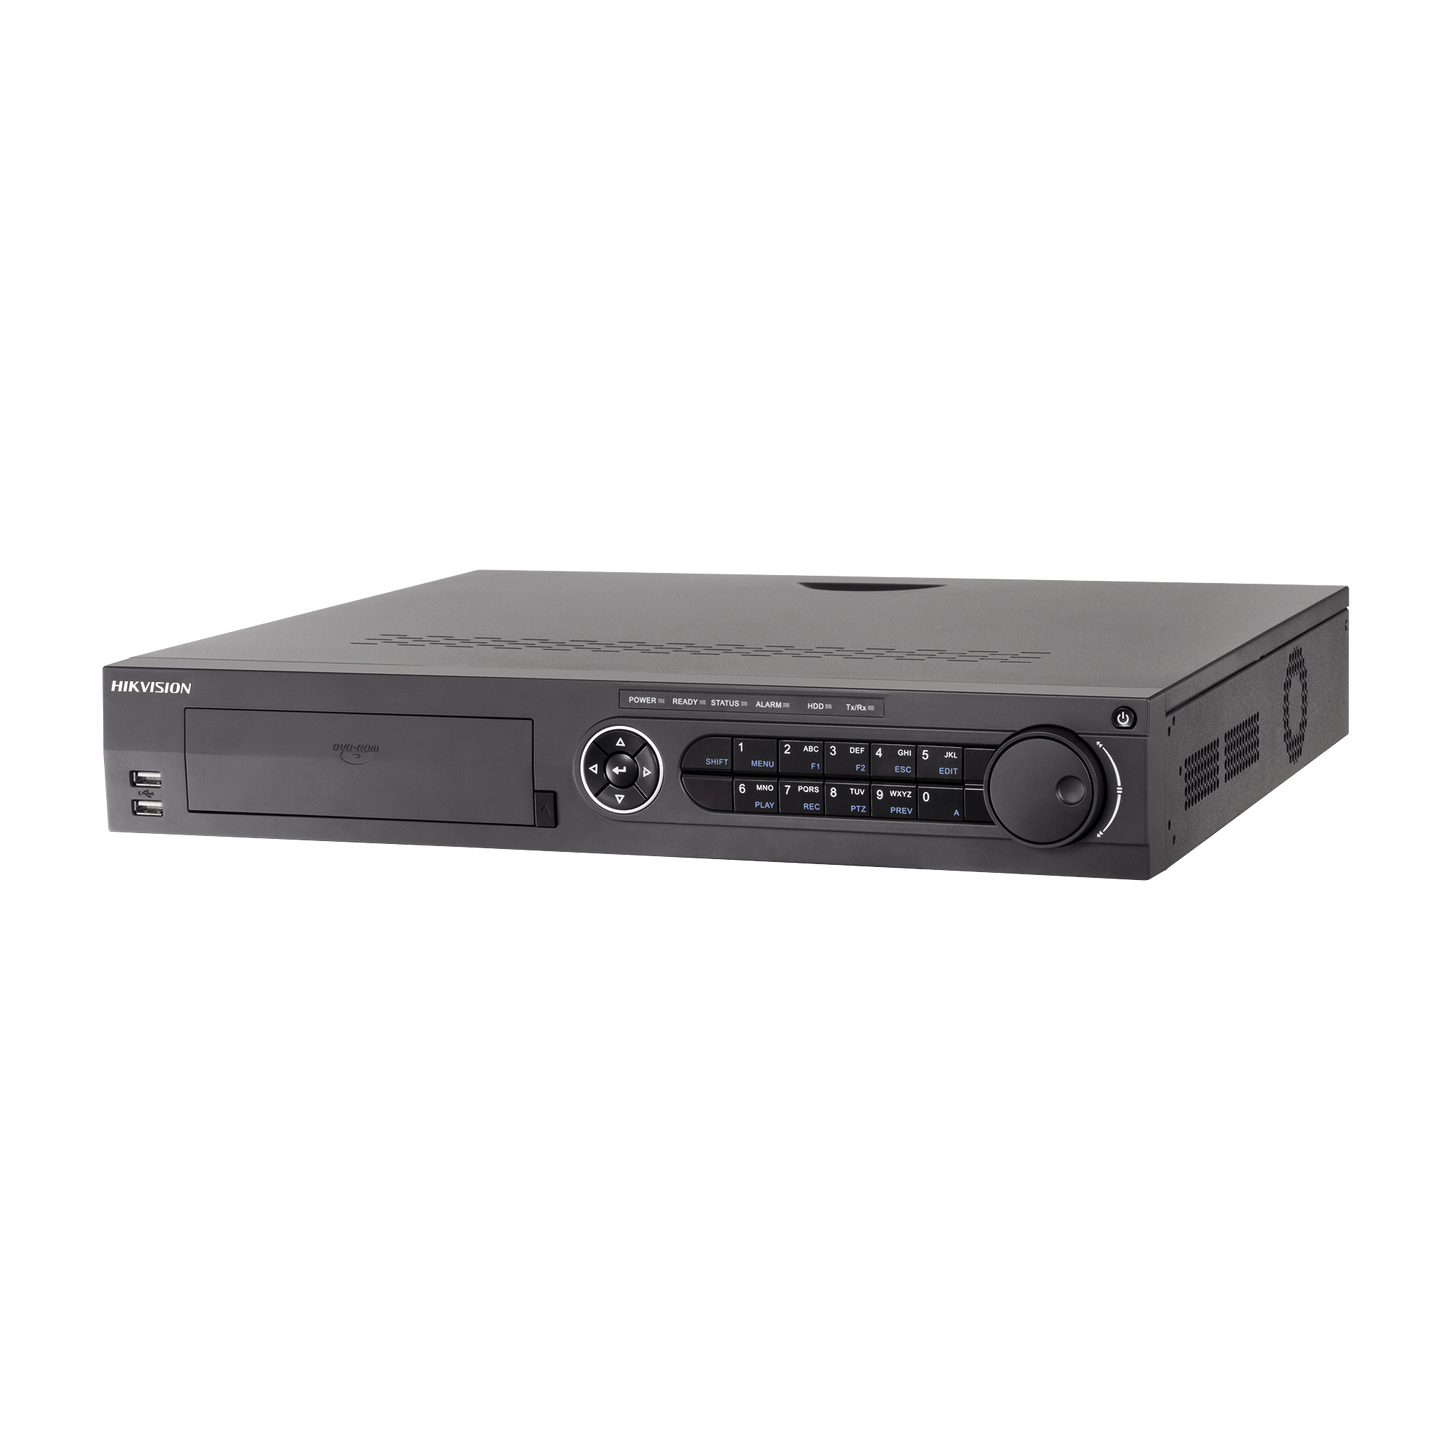 DVR 32 Canales TurboHD + 32 Canales IP / 8 Megapixel (4K) / 4 Bahías de Disco Duro / RAID 0,1,5,6,10 / POS / Videoanalisis / 16 Entradas de Alarma / 2 Salidas HDMI